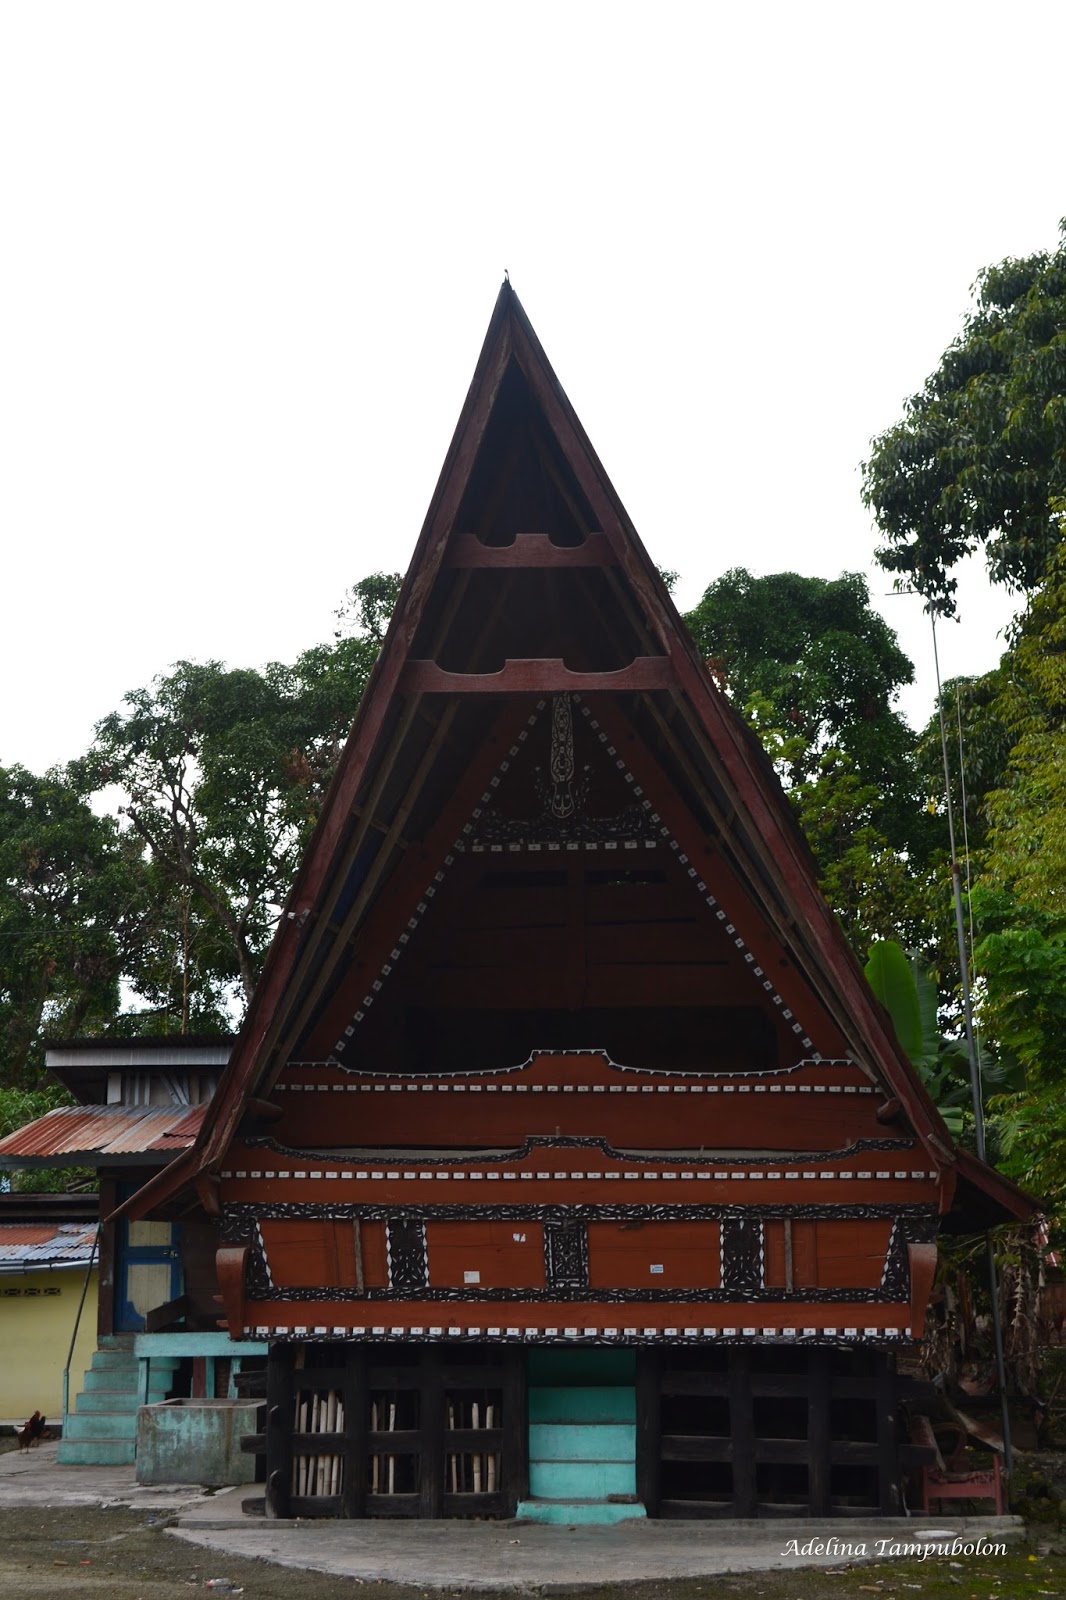 Rumah adat sumatera utara - bolon: Gambar Rumah Bolon